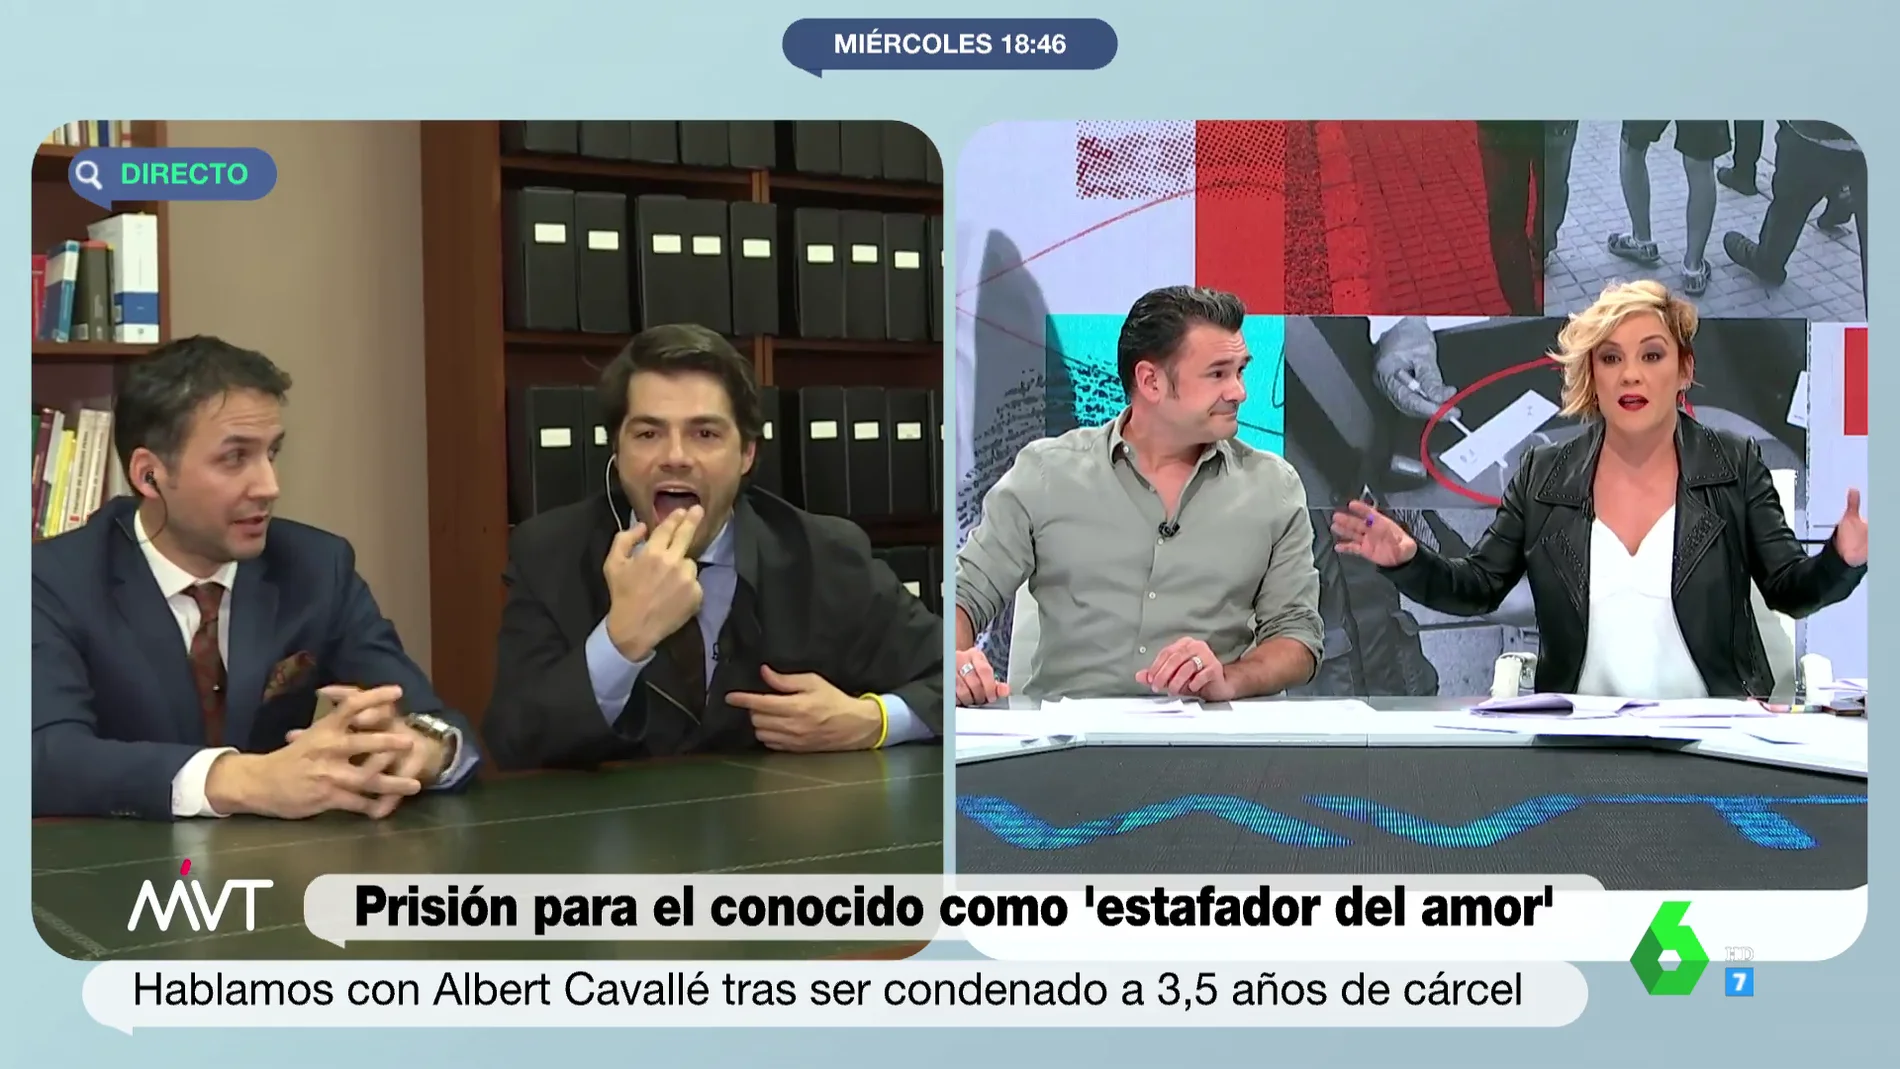 Cristina Pardo estalla contra las faltas de respeto de Albert Cavallé en su entrevista: "Váyase a sacarle la lengua al juez"